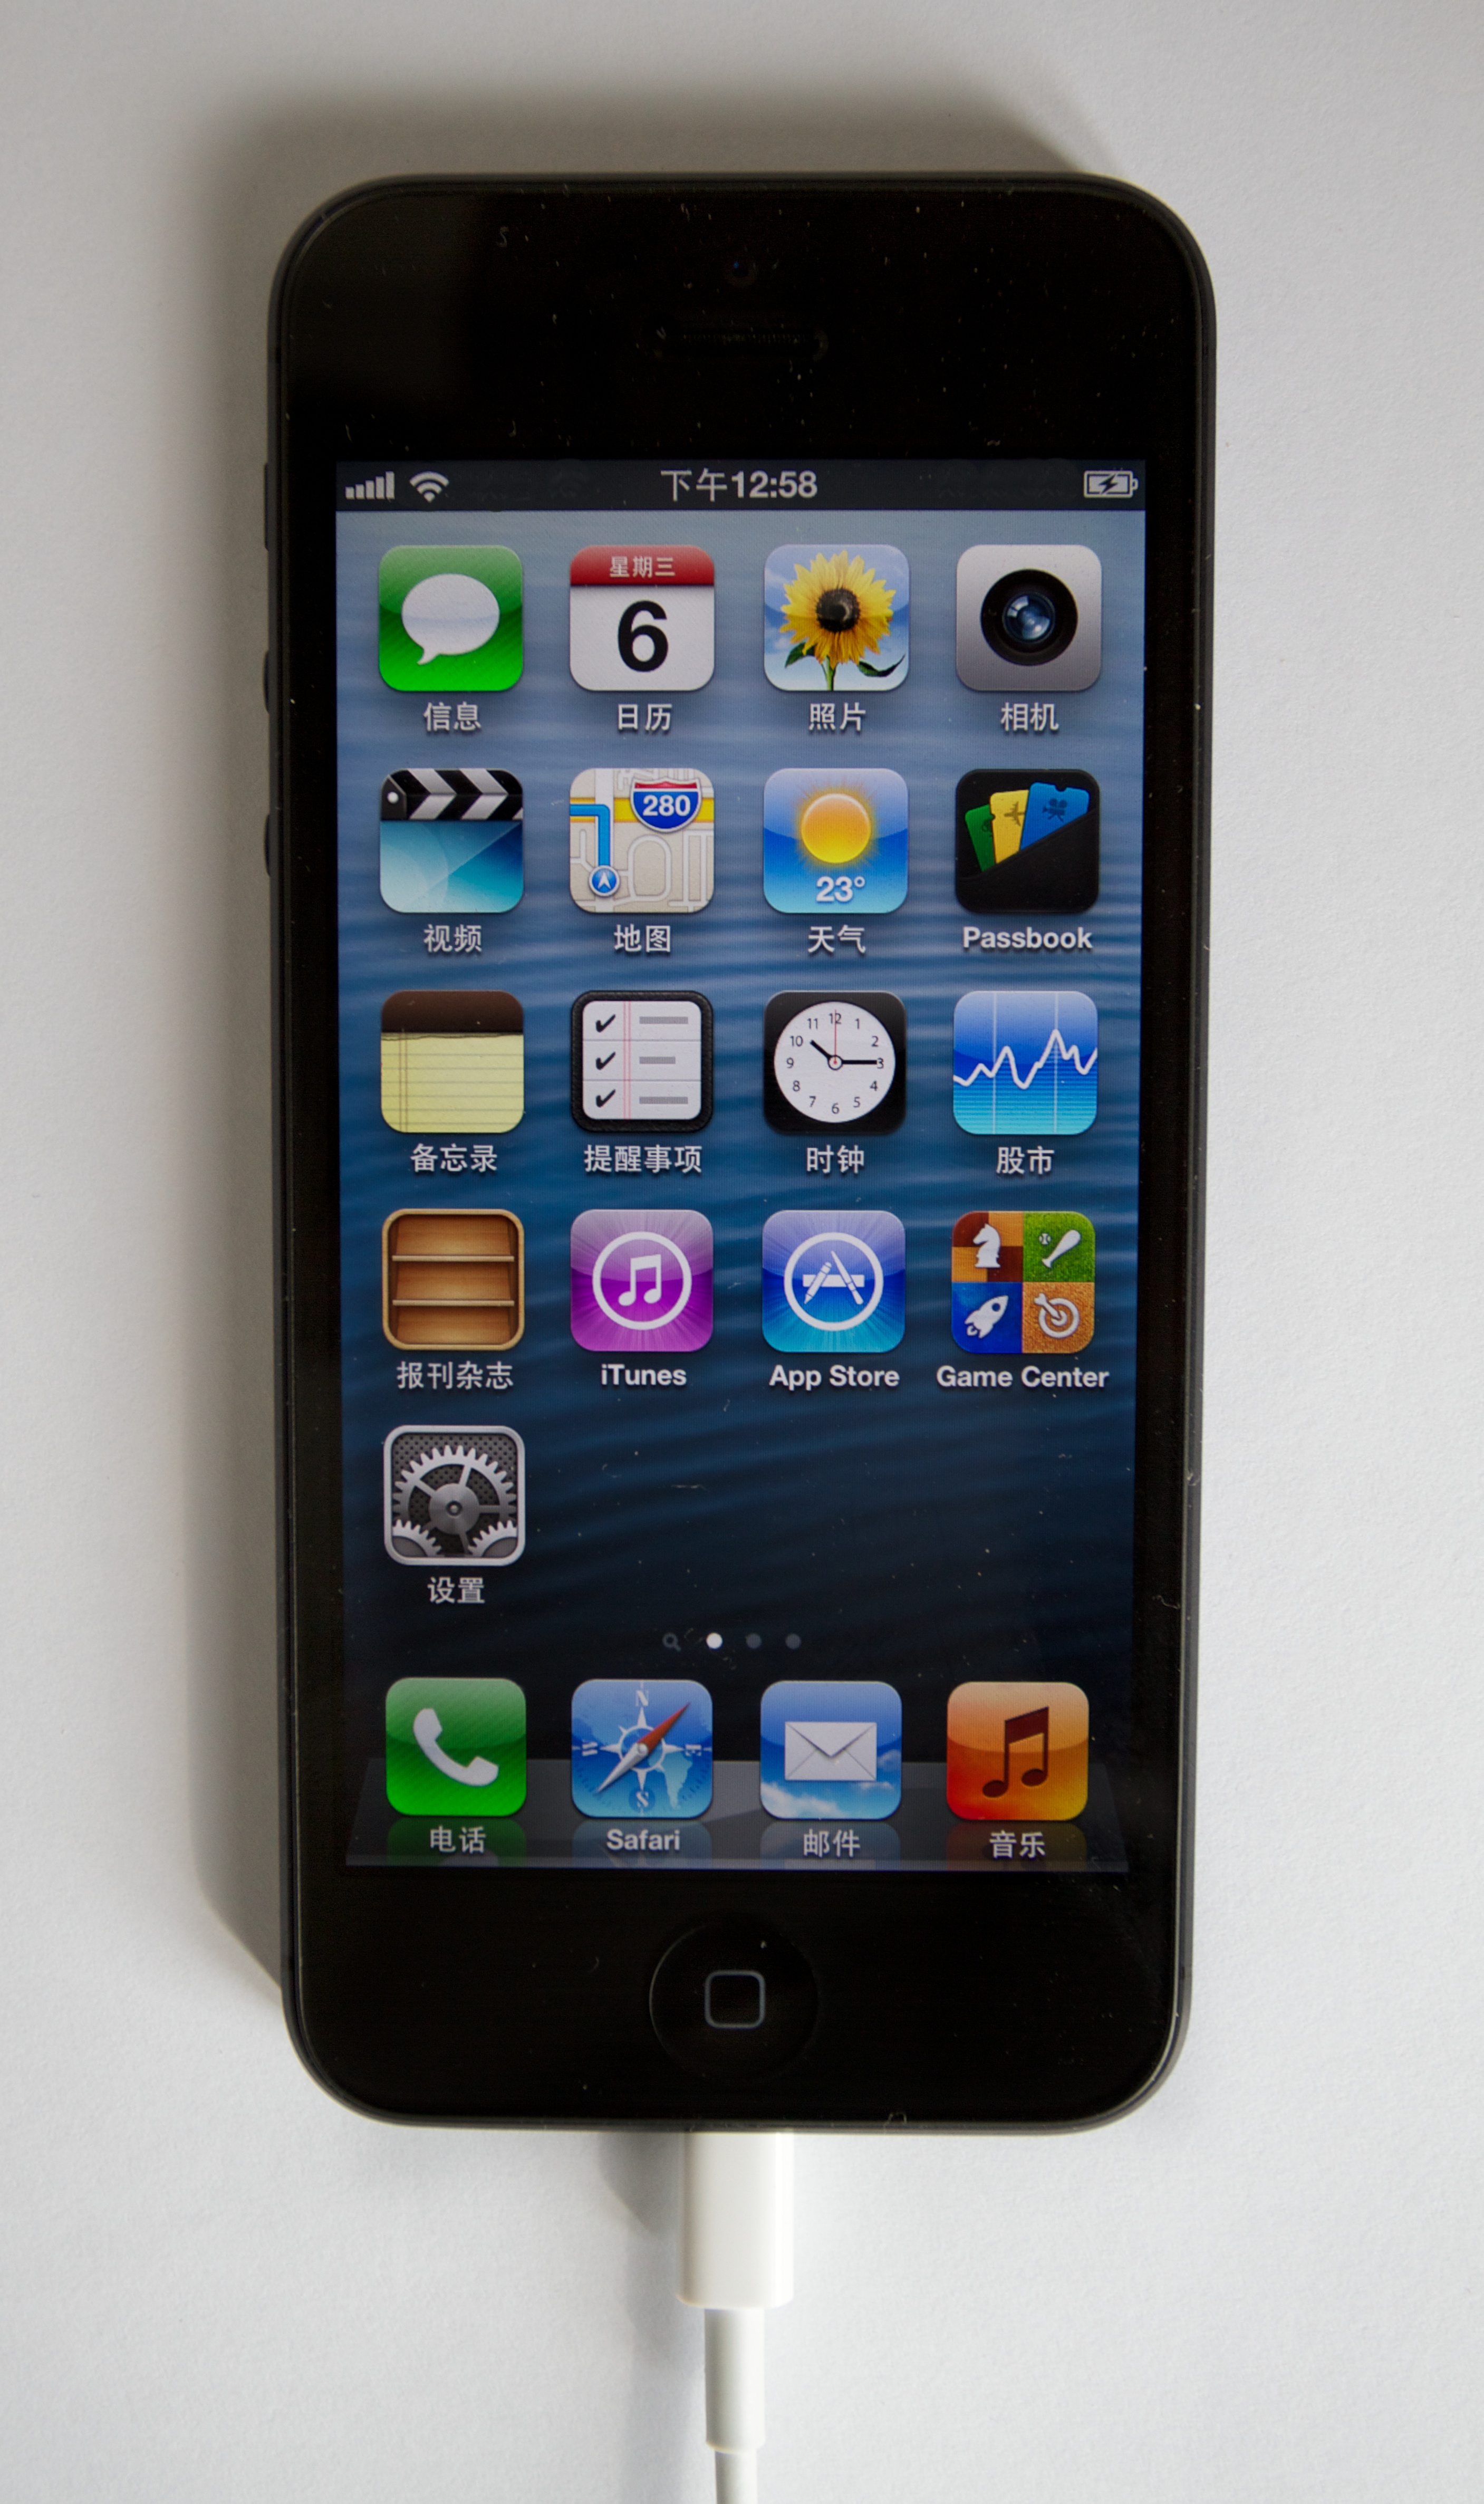 Auf dem Bild ist ein iPhone 5 zu sehen.